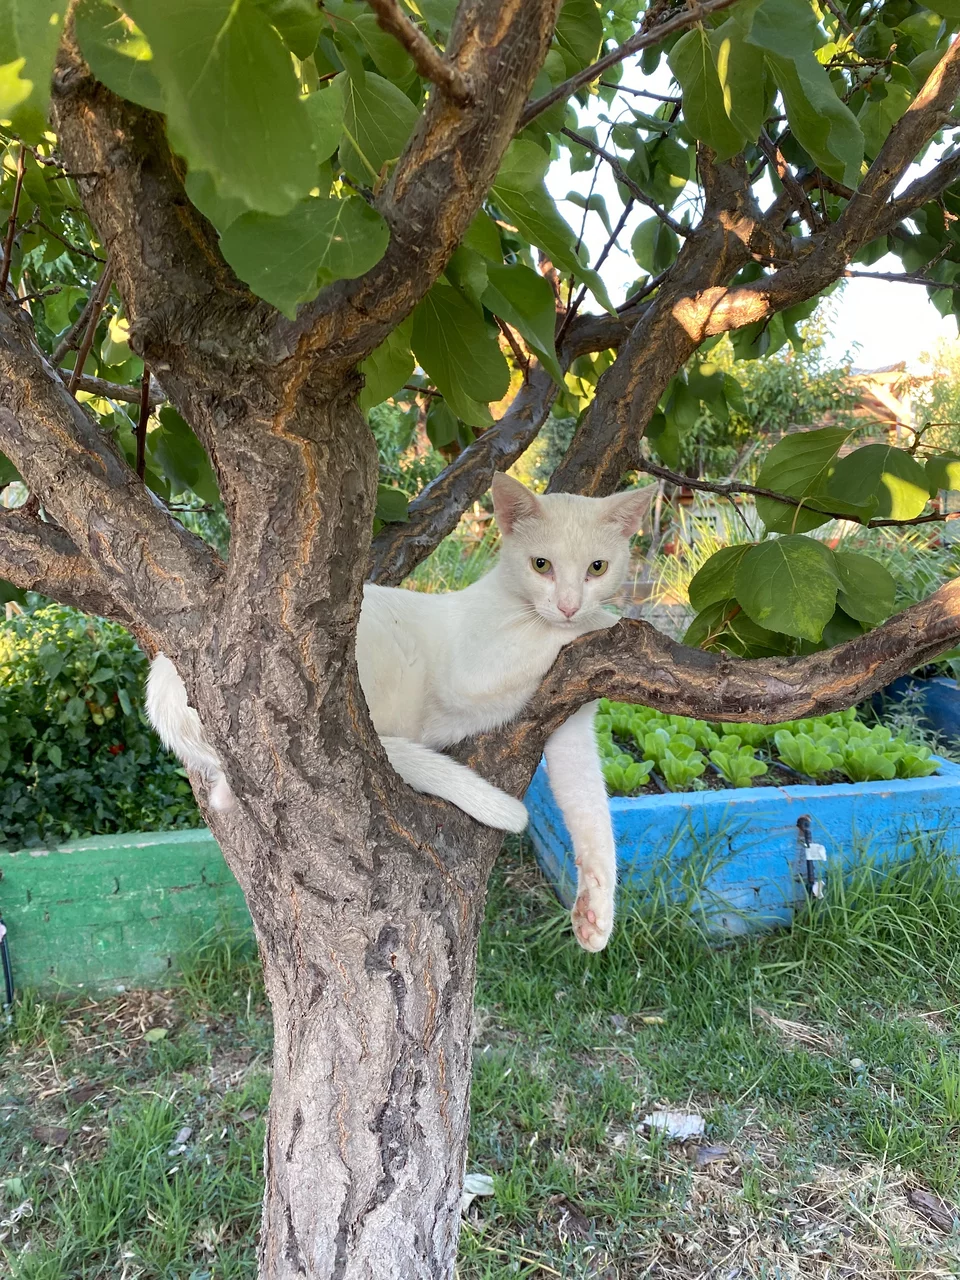 Οι γάτες του περιβολιού κοιμούνται ευτυχισμένες πάνω στα δέντρα.